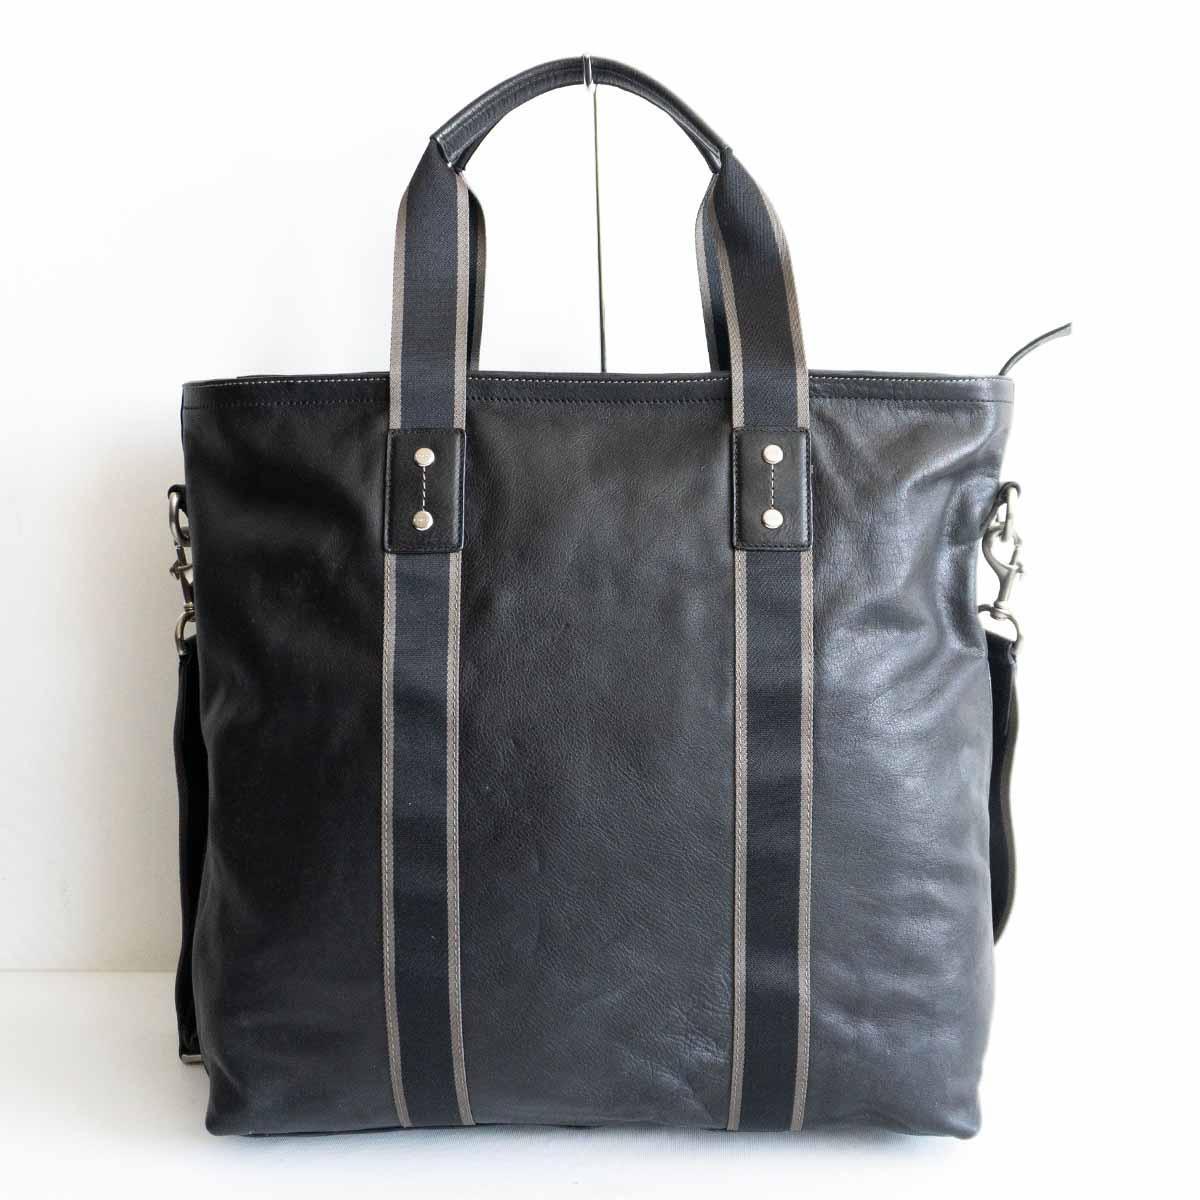 【 стандартный товар  модель  】COACH【F70560/ стирание ... ...  кожа   утилита  ... 2way  сумка для покупок 】 черный  ... сумка  ... 2405195